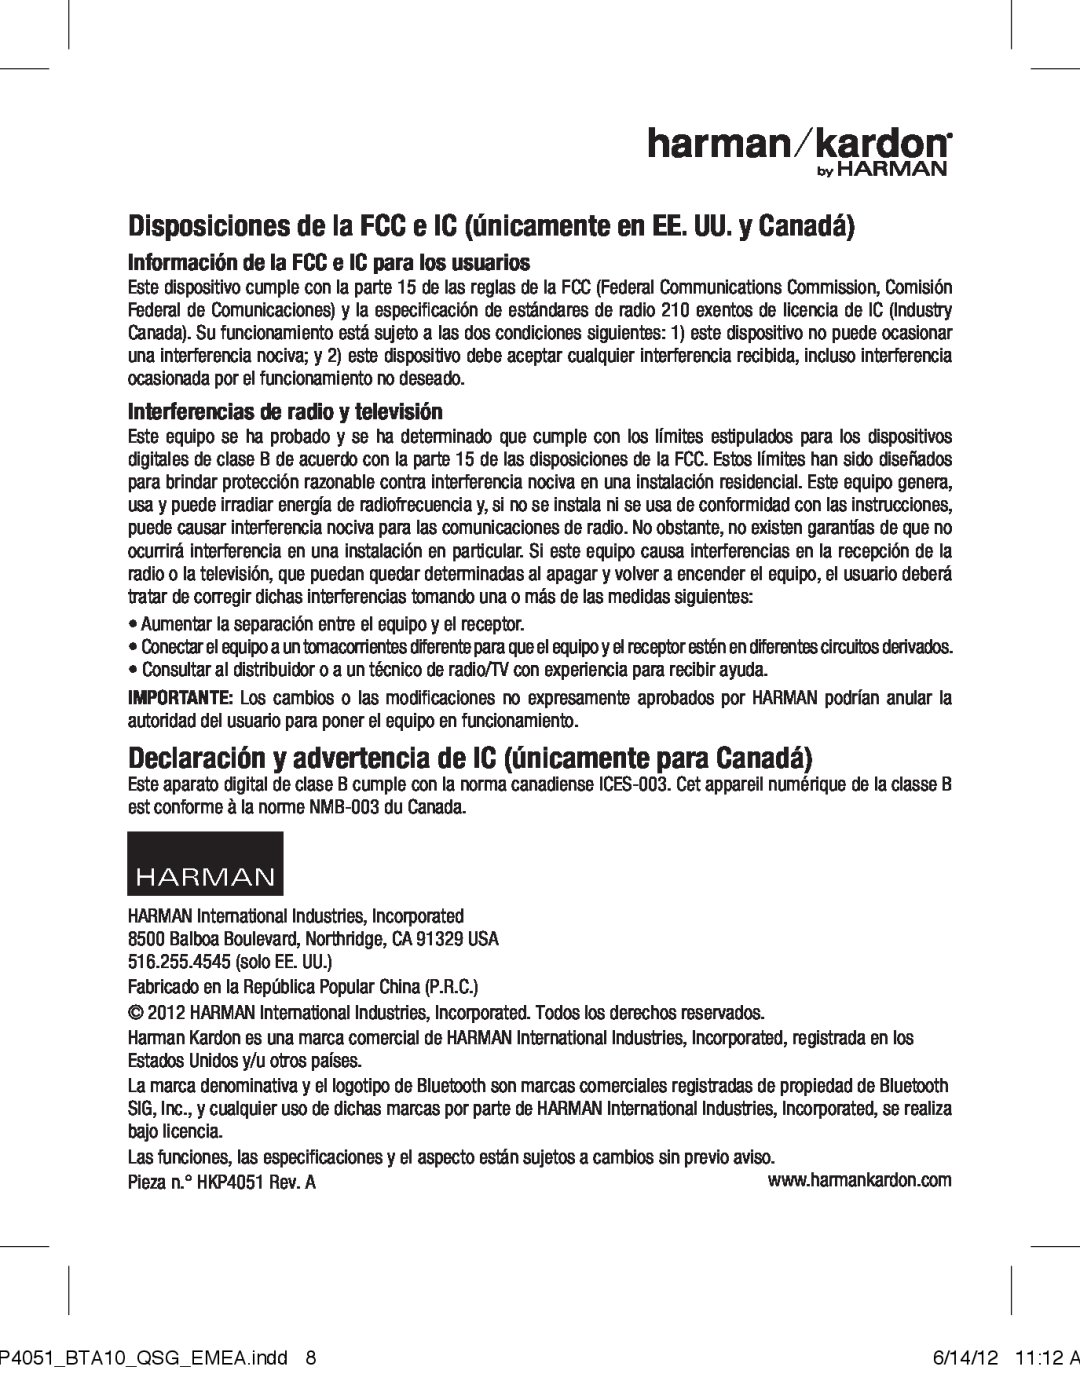 Harman-Kardon BTA 10 Disposiciones de la FCC e IC únicamente en EE. UU. y Canadá, Interferencias de radio y televisión 